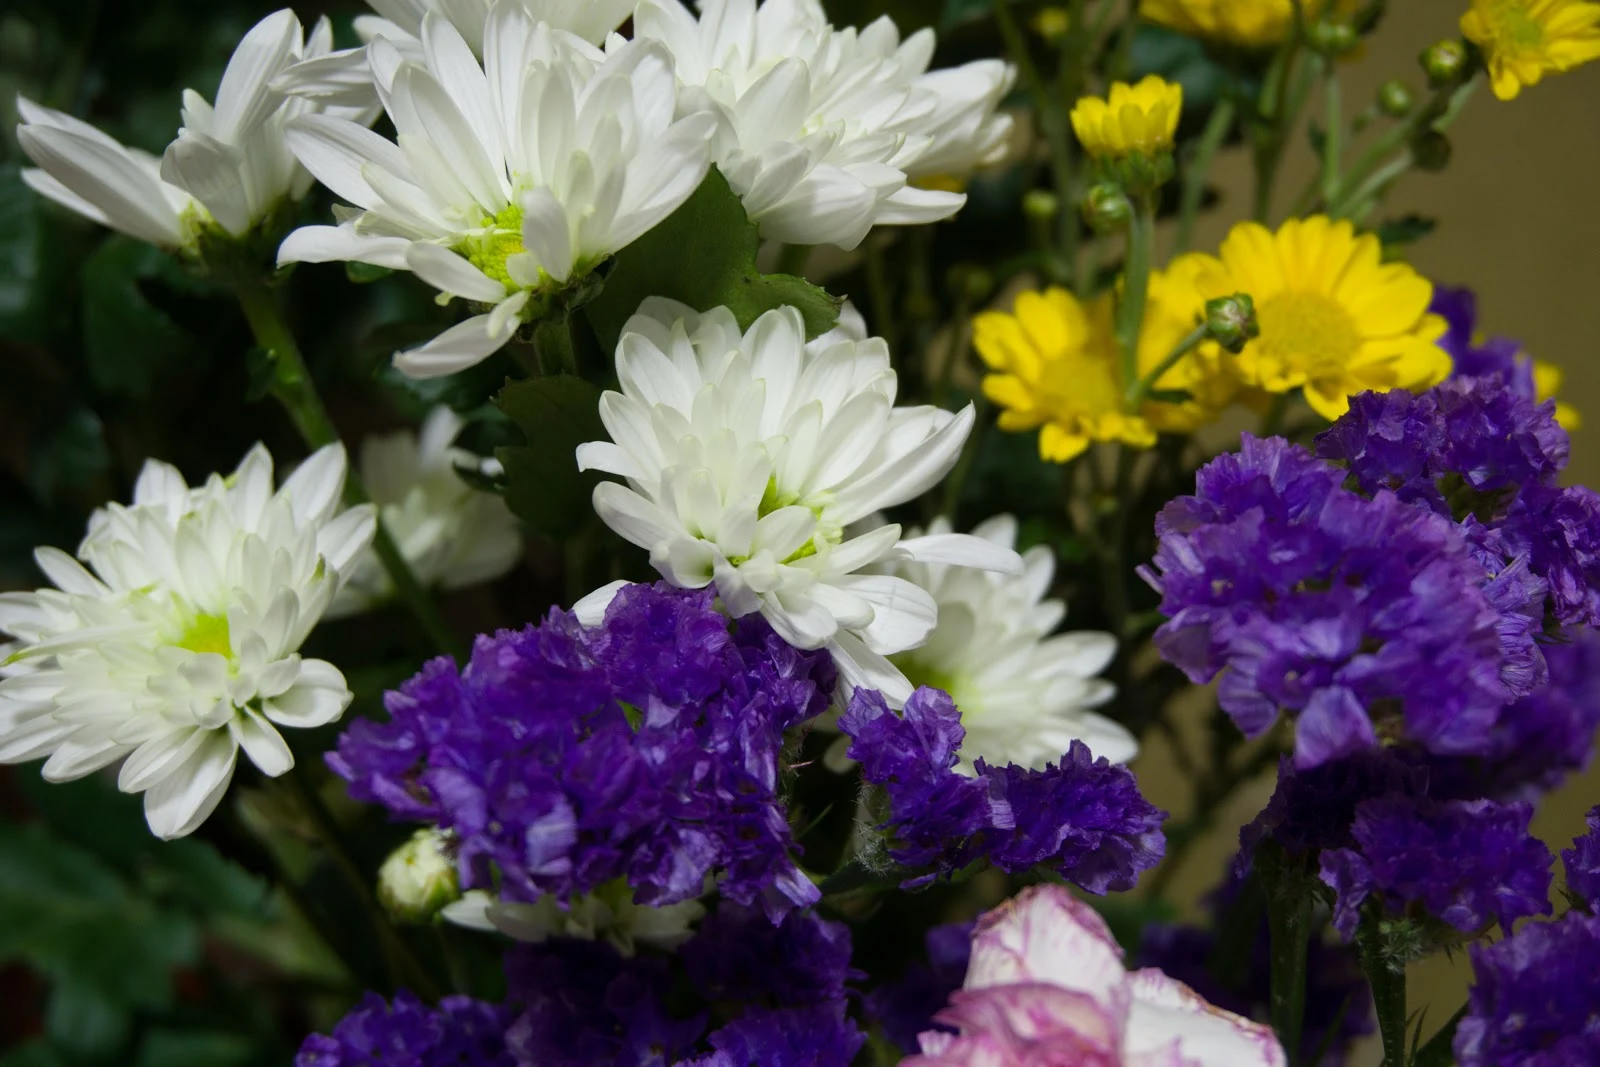 α5100とSELP1650の作例：室内の花瓶の白と紫と黄色の花々